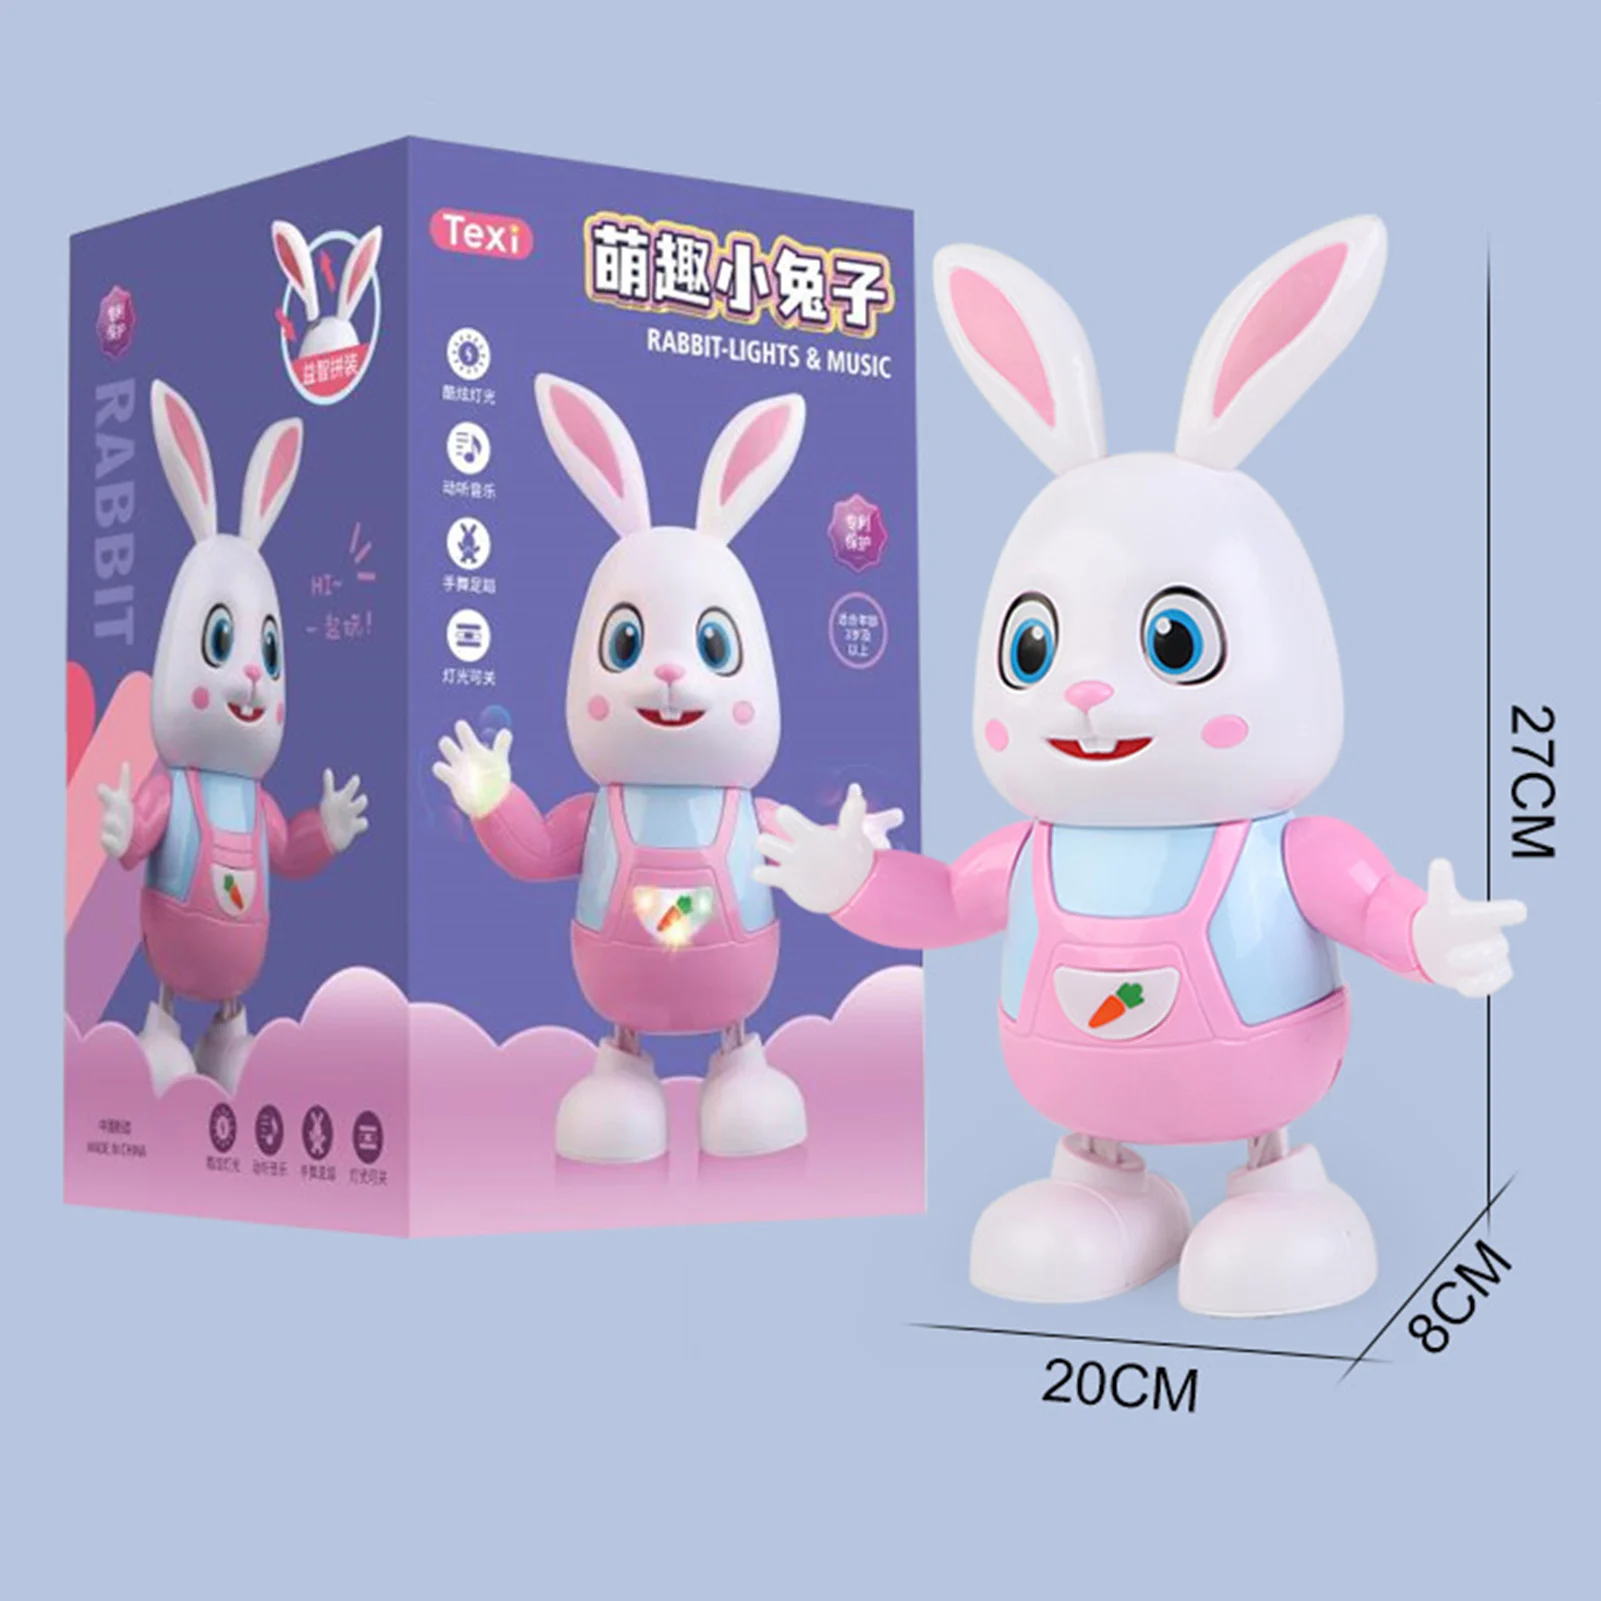 Elektryczne muzyczne zabawka króliczek do tańca wczesna edukacja oświetlenie dla dzieci interaktywna zabawka dla dzieci świąteczny prezent urodzinowy na Wielkanoc